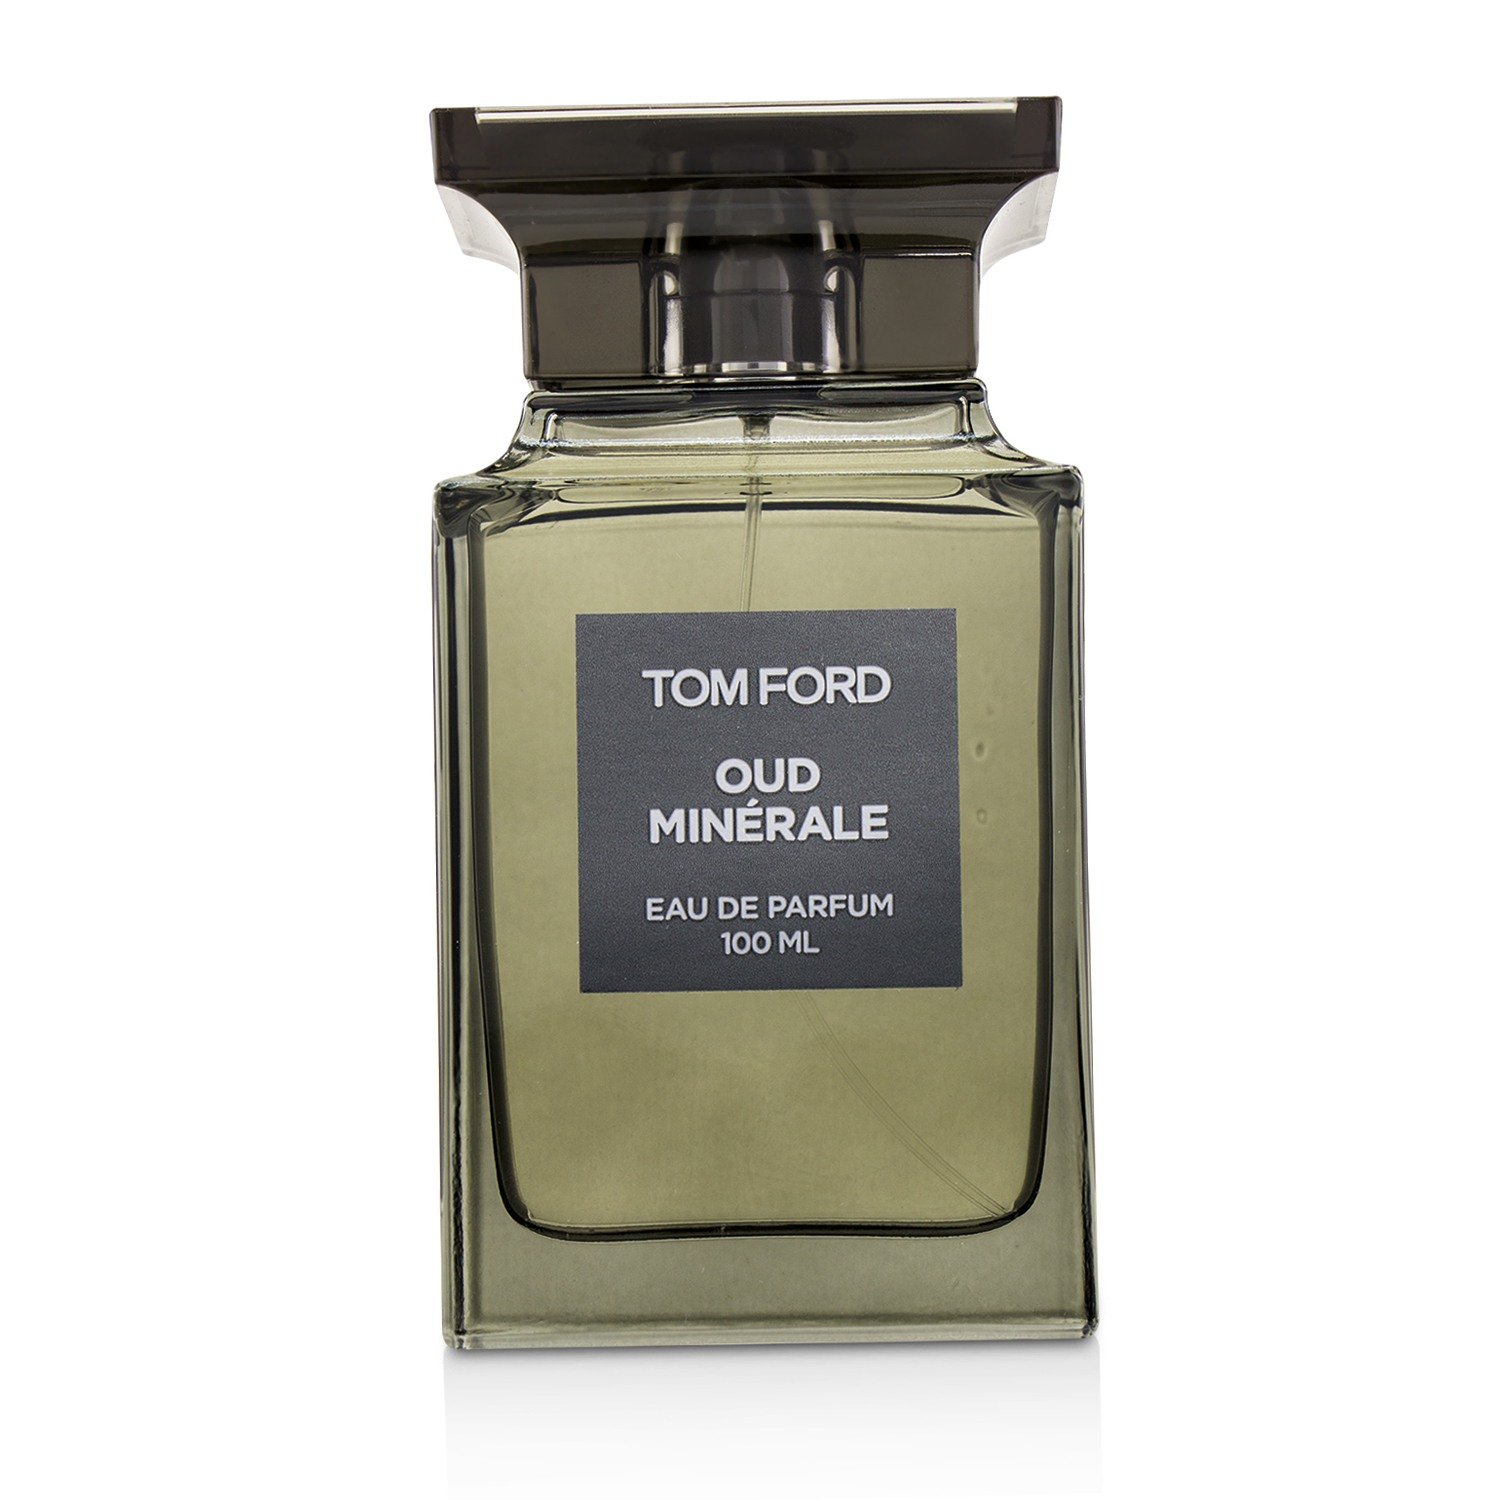 Tom Ford Oud Minerale EDP - Oanh Perfume - Nước Hoa Mỹ Phẩm Chính Hãng